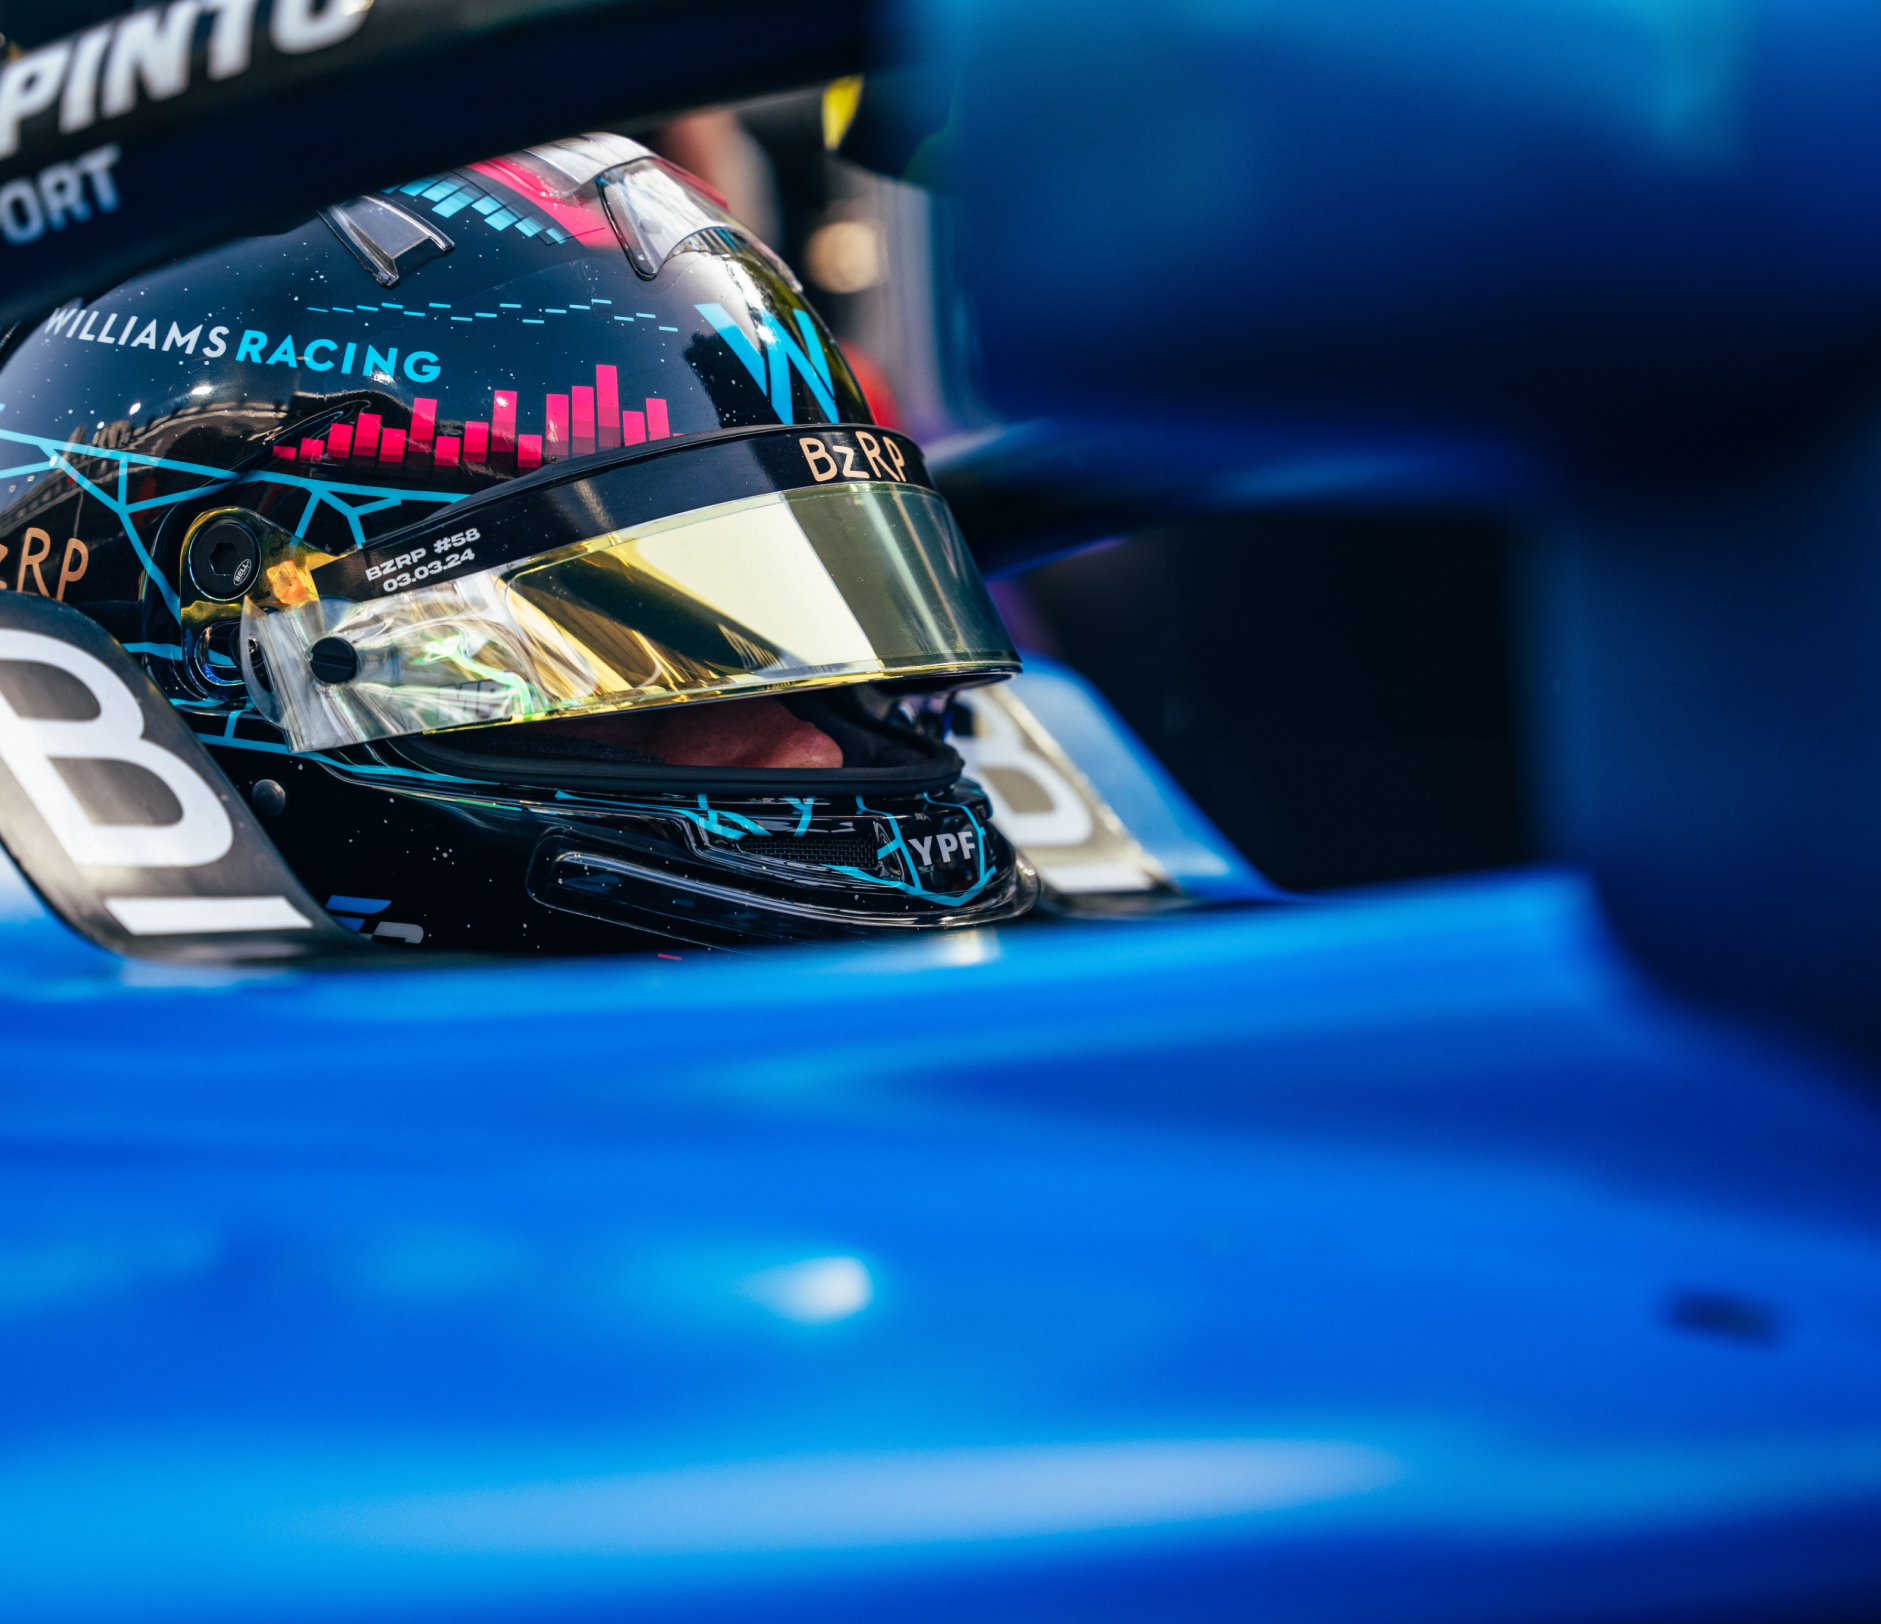 Williams F1 driver in cockpit